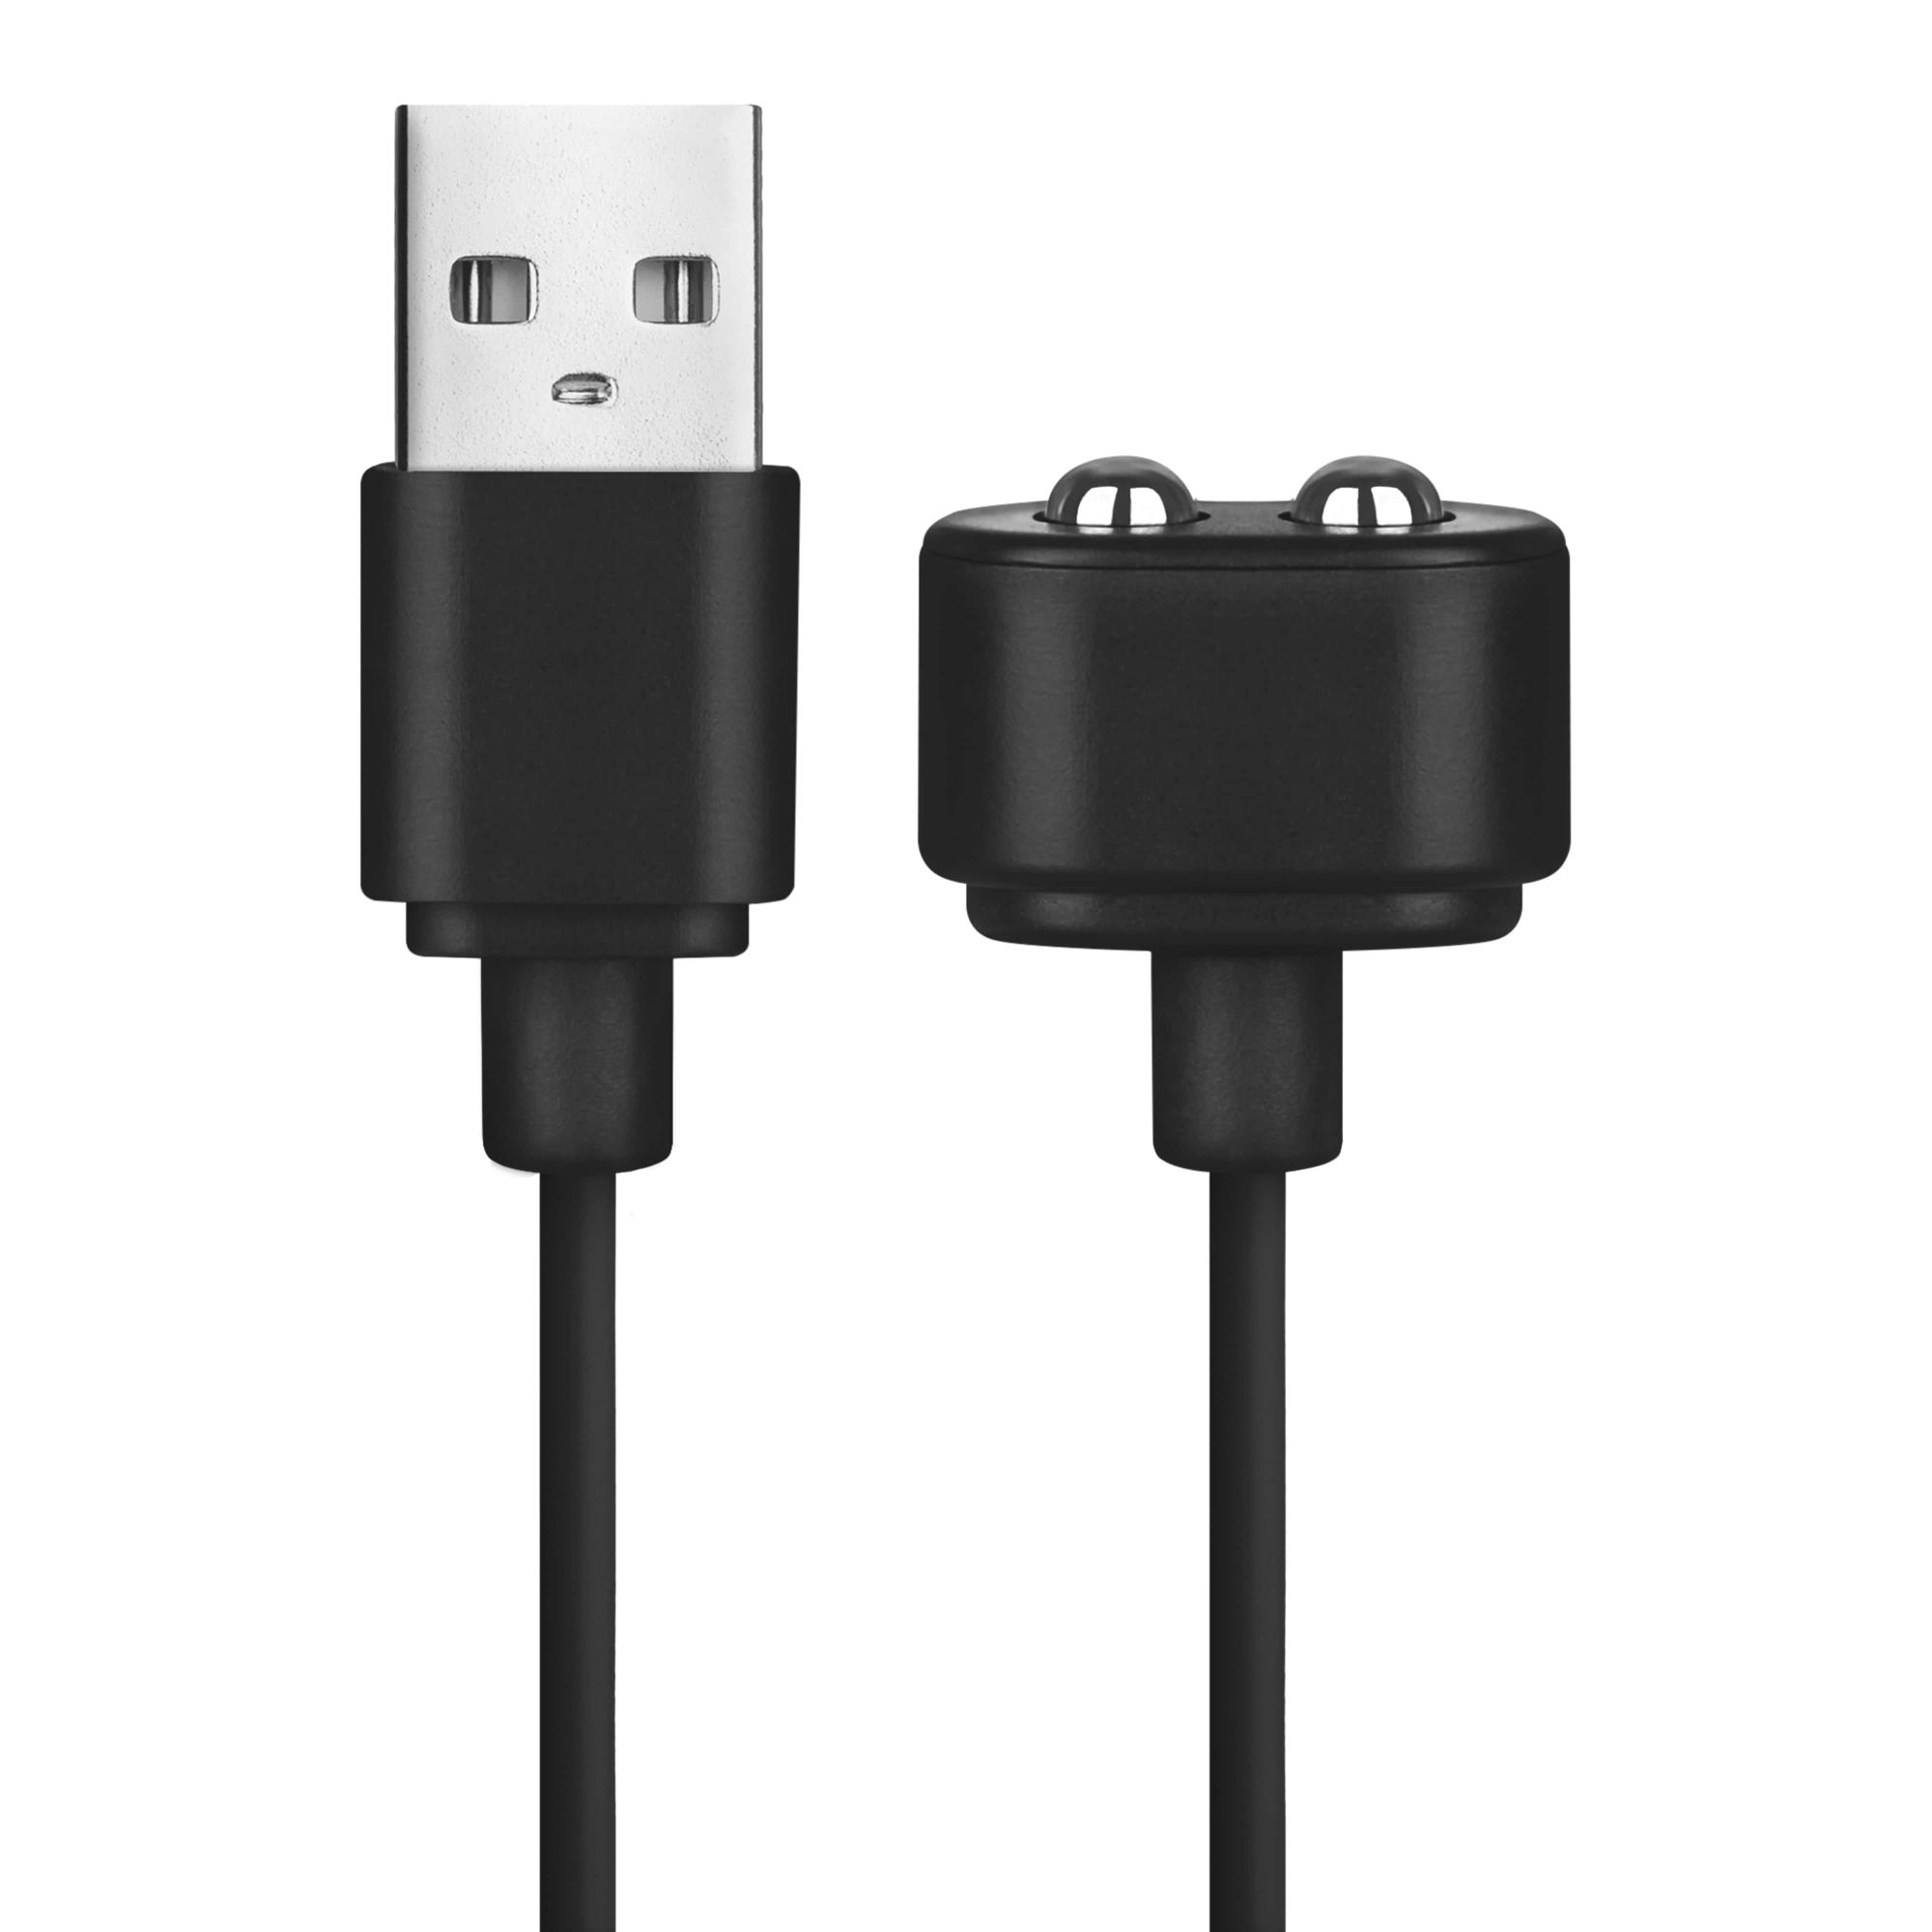 Satisfyer USB Charging Cable white кабель для зарядки для вибромассажеров Satisfyer, 110 см (чёрный)